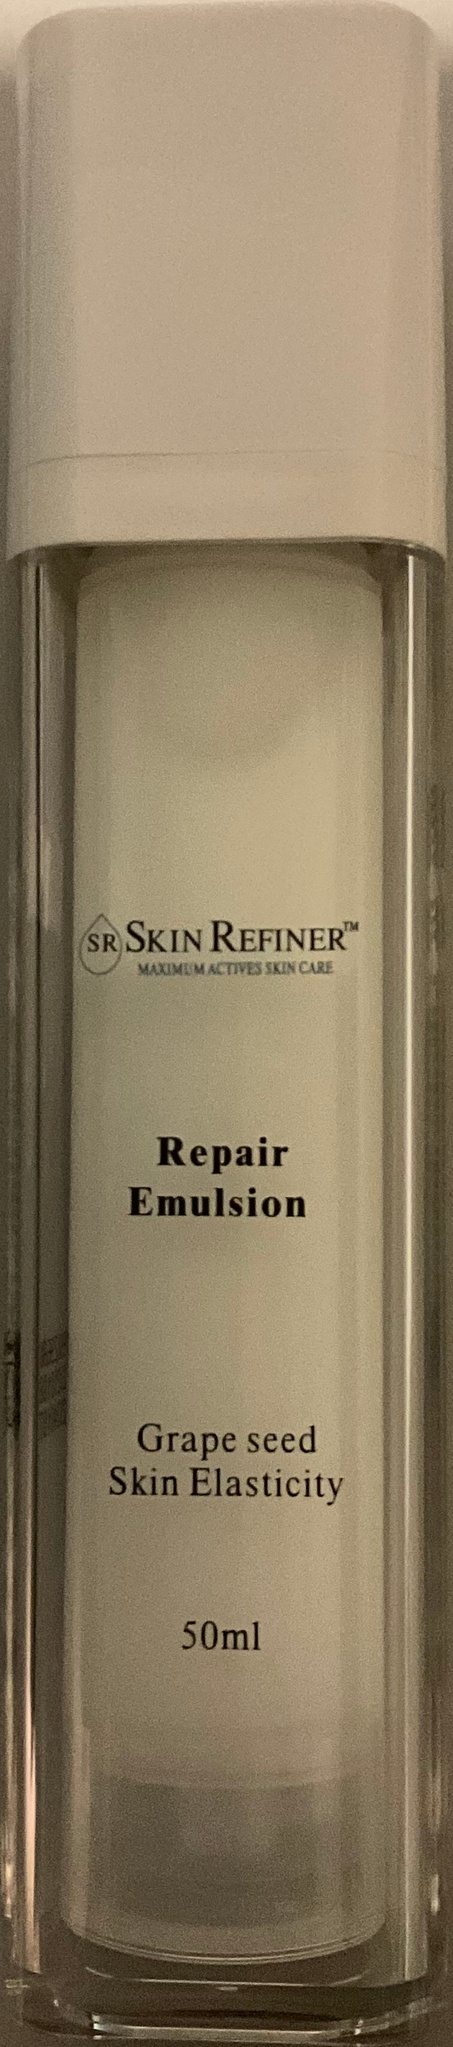 Skin Refiner Repair Emulsion